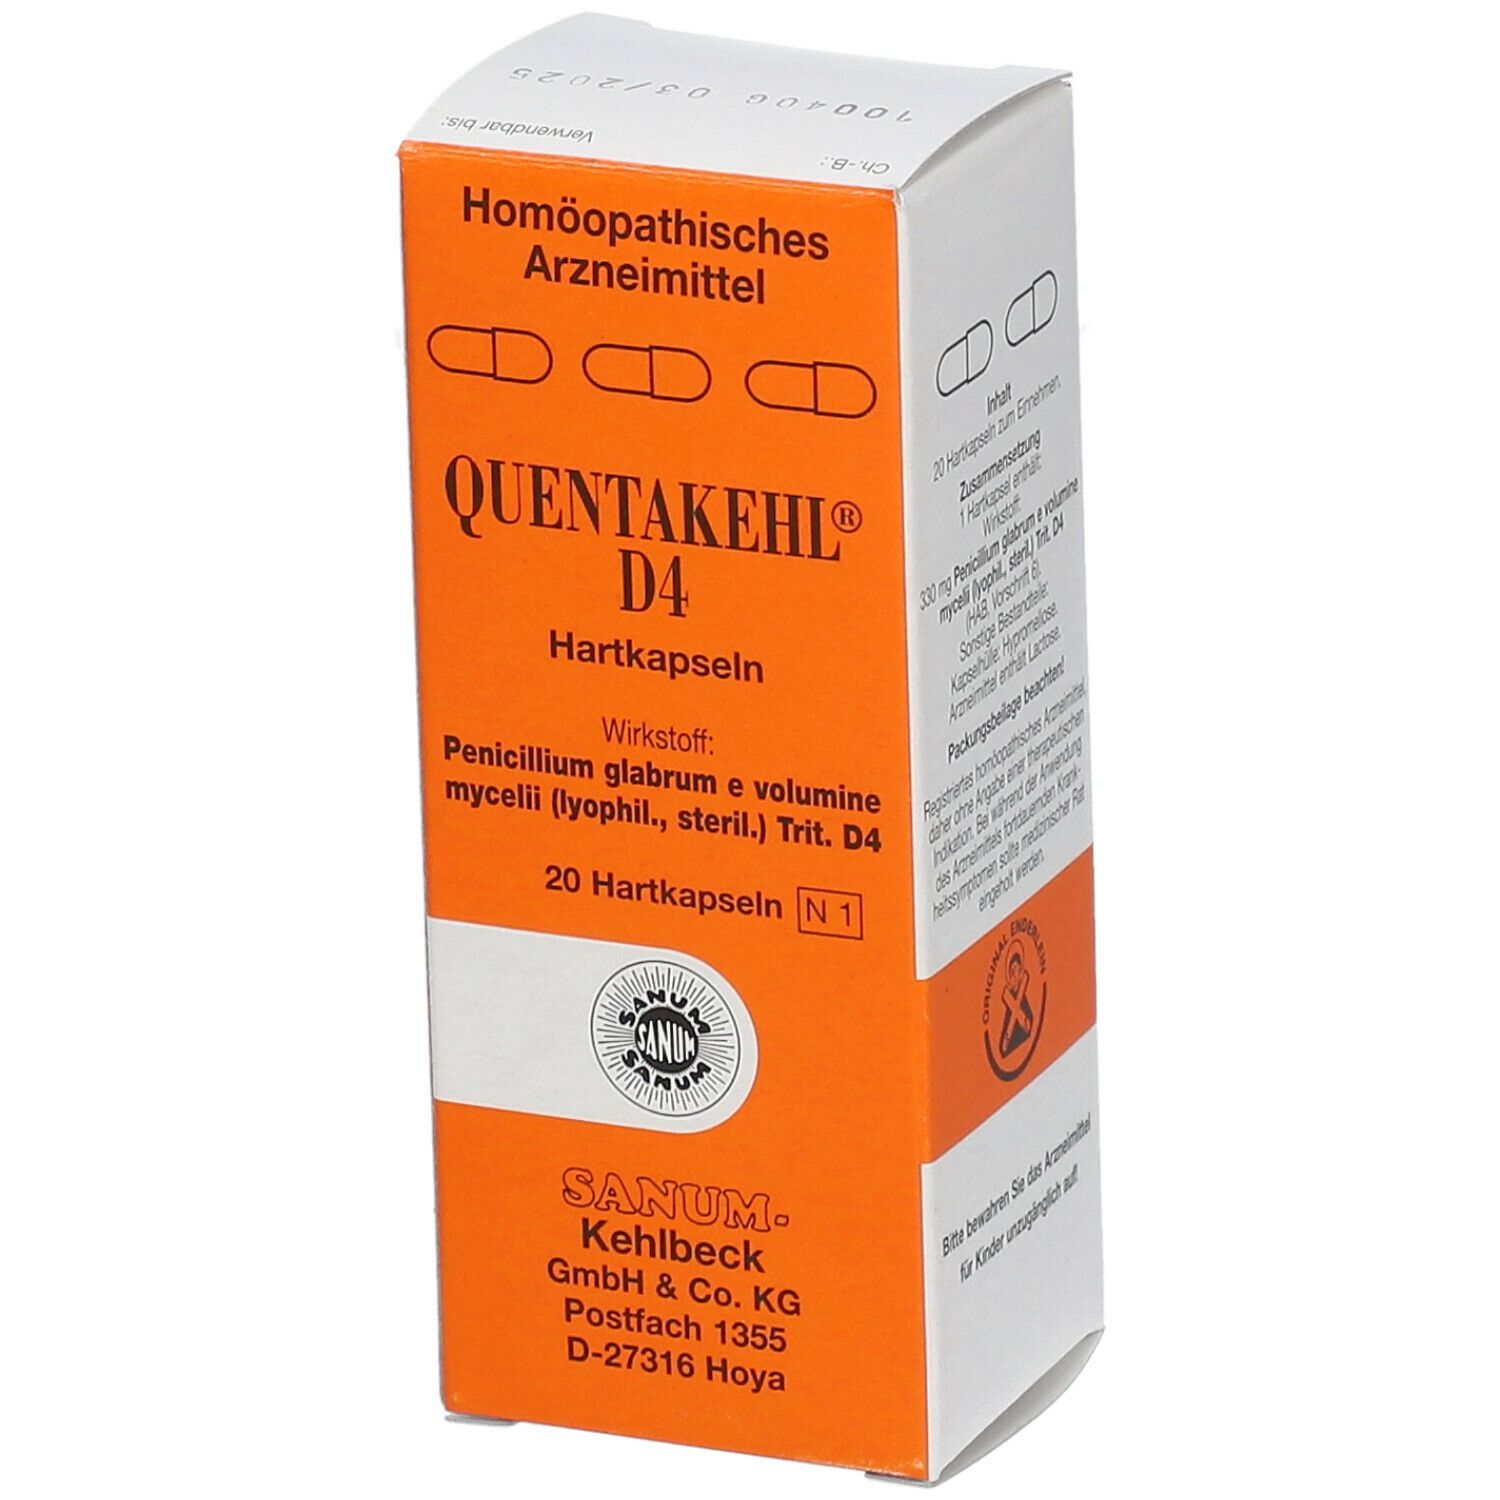 Quentakehl® D4 Kapseln